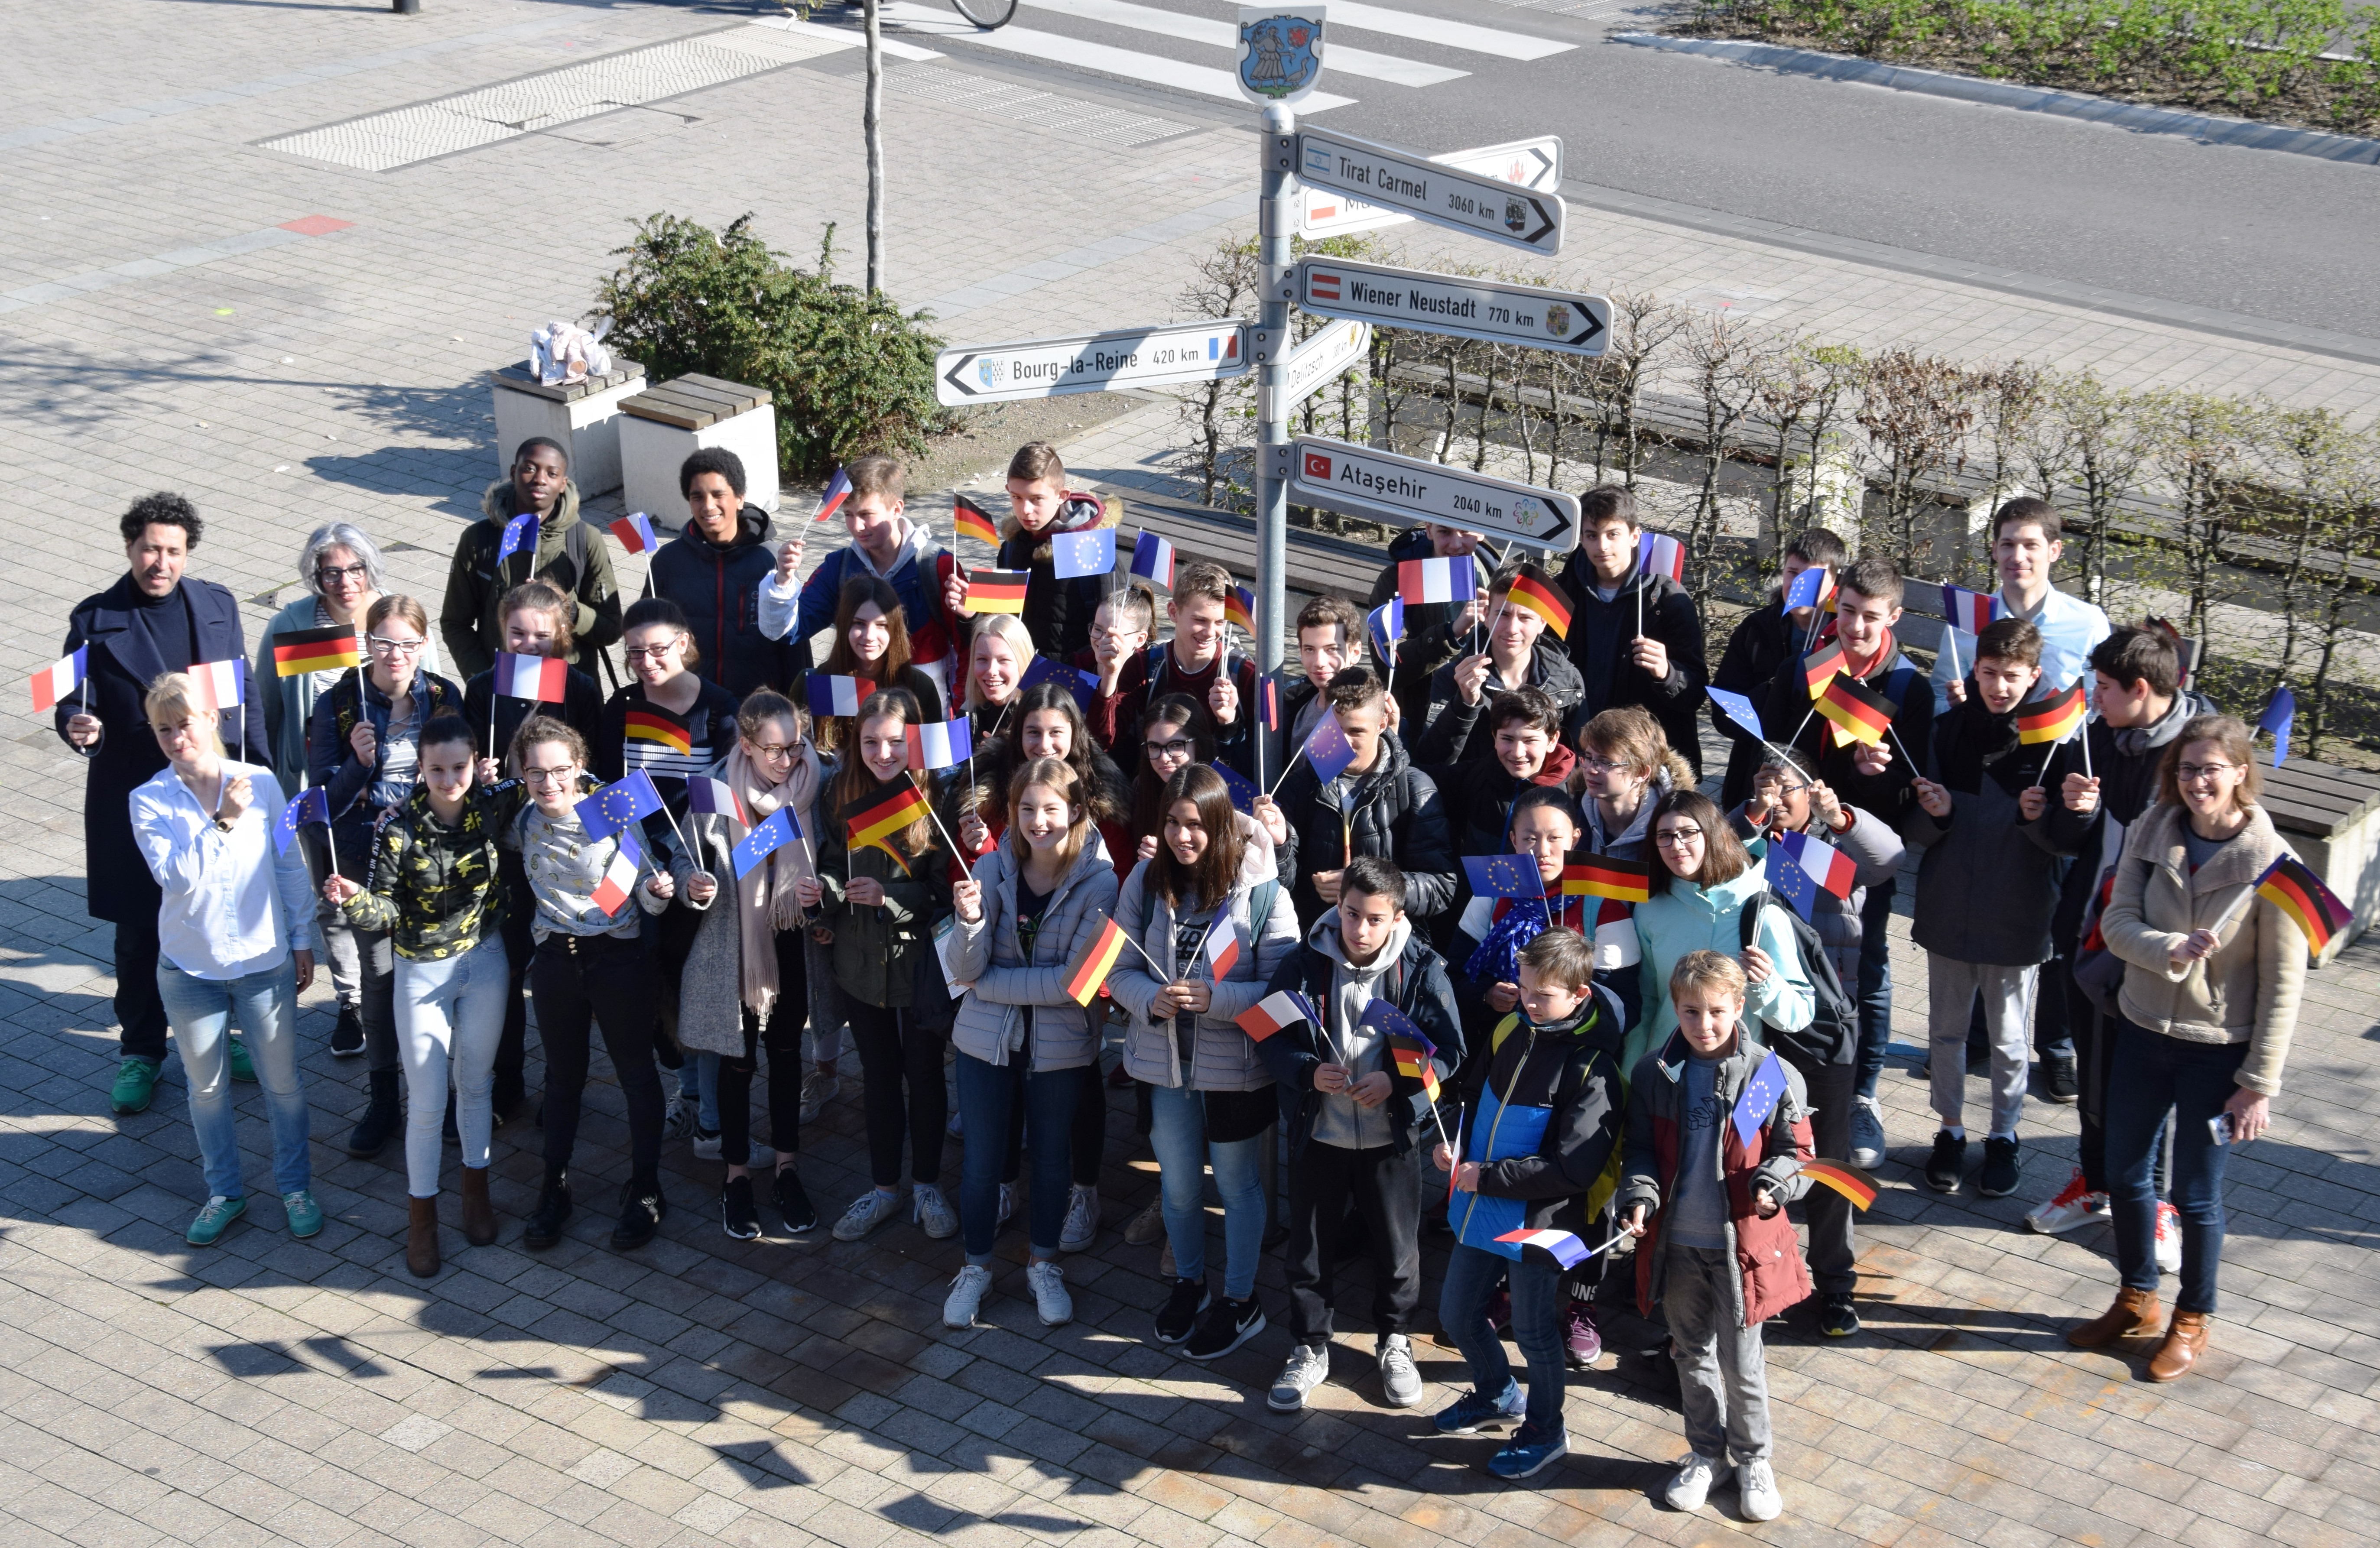 Schülerinnen und Schüler aus Bourg-la-Reine in Monheim am Rhein